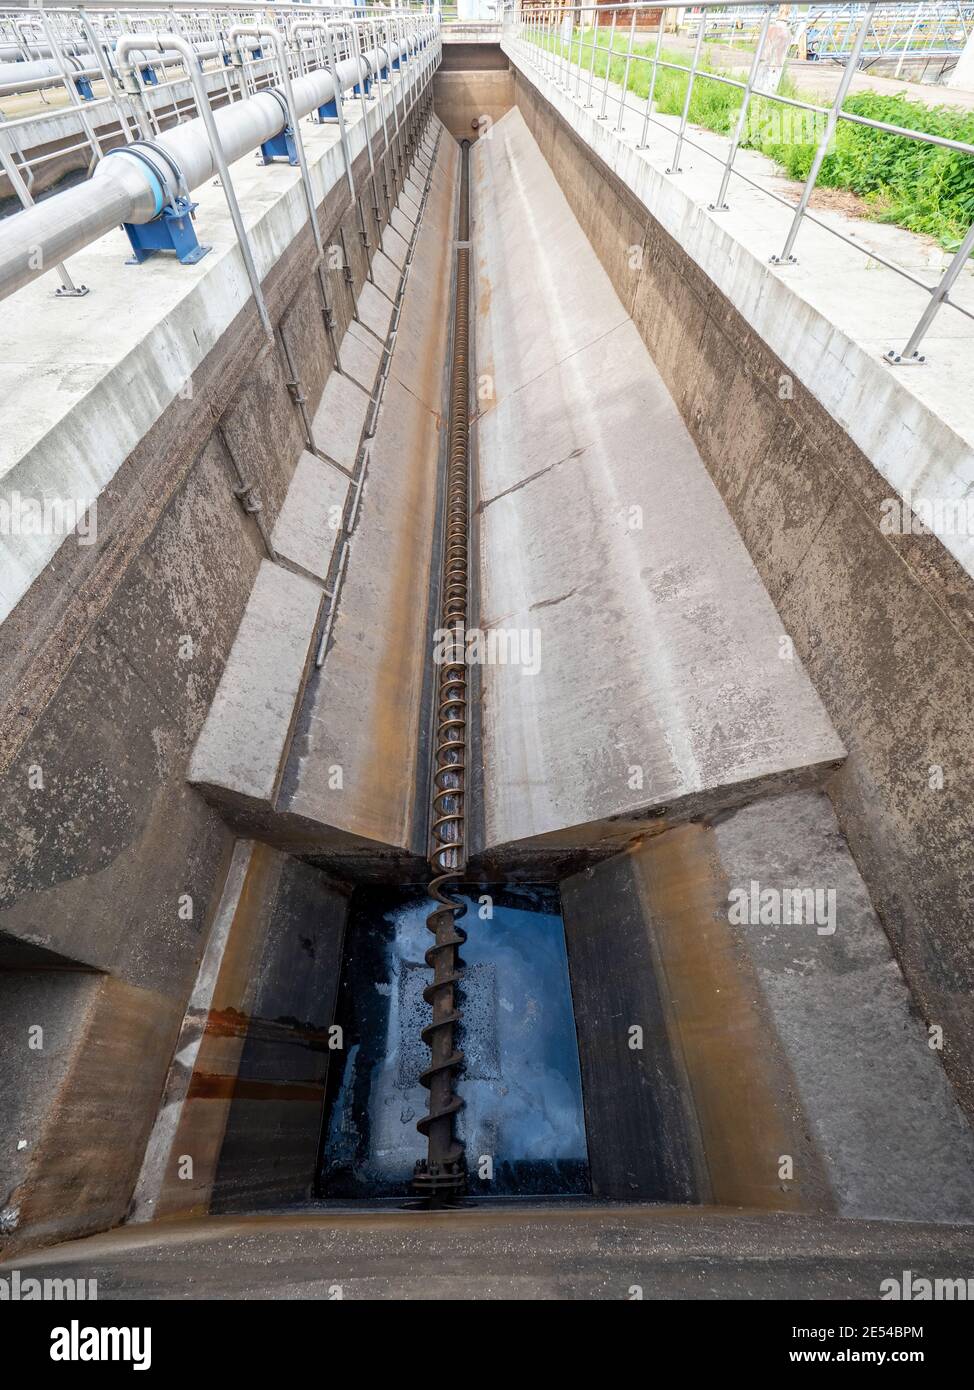 Reinigung der Fettabscheider, Abwassertank und Schacht am Stadtabwasser Und Schlammfabrik Stockfoto